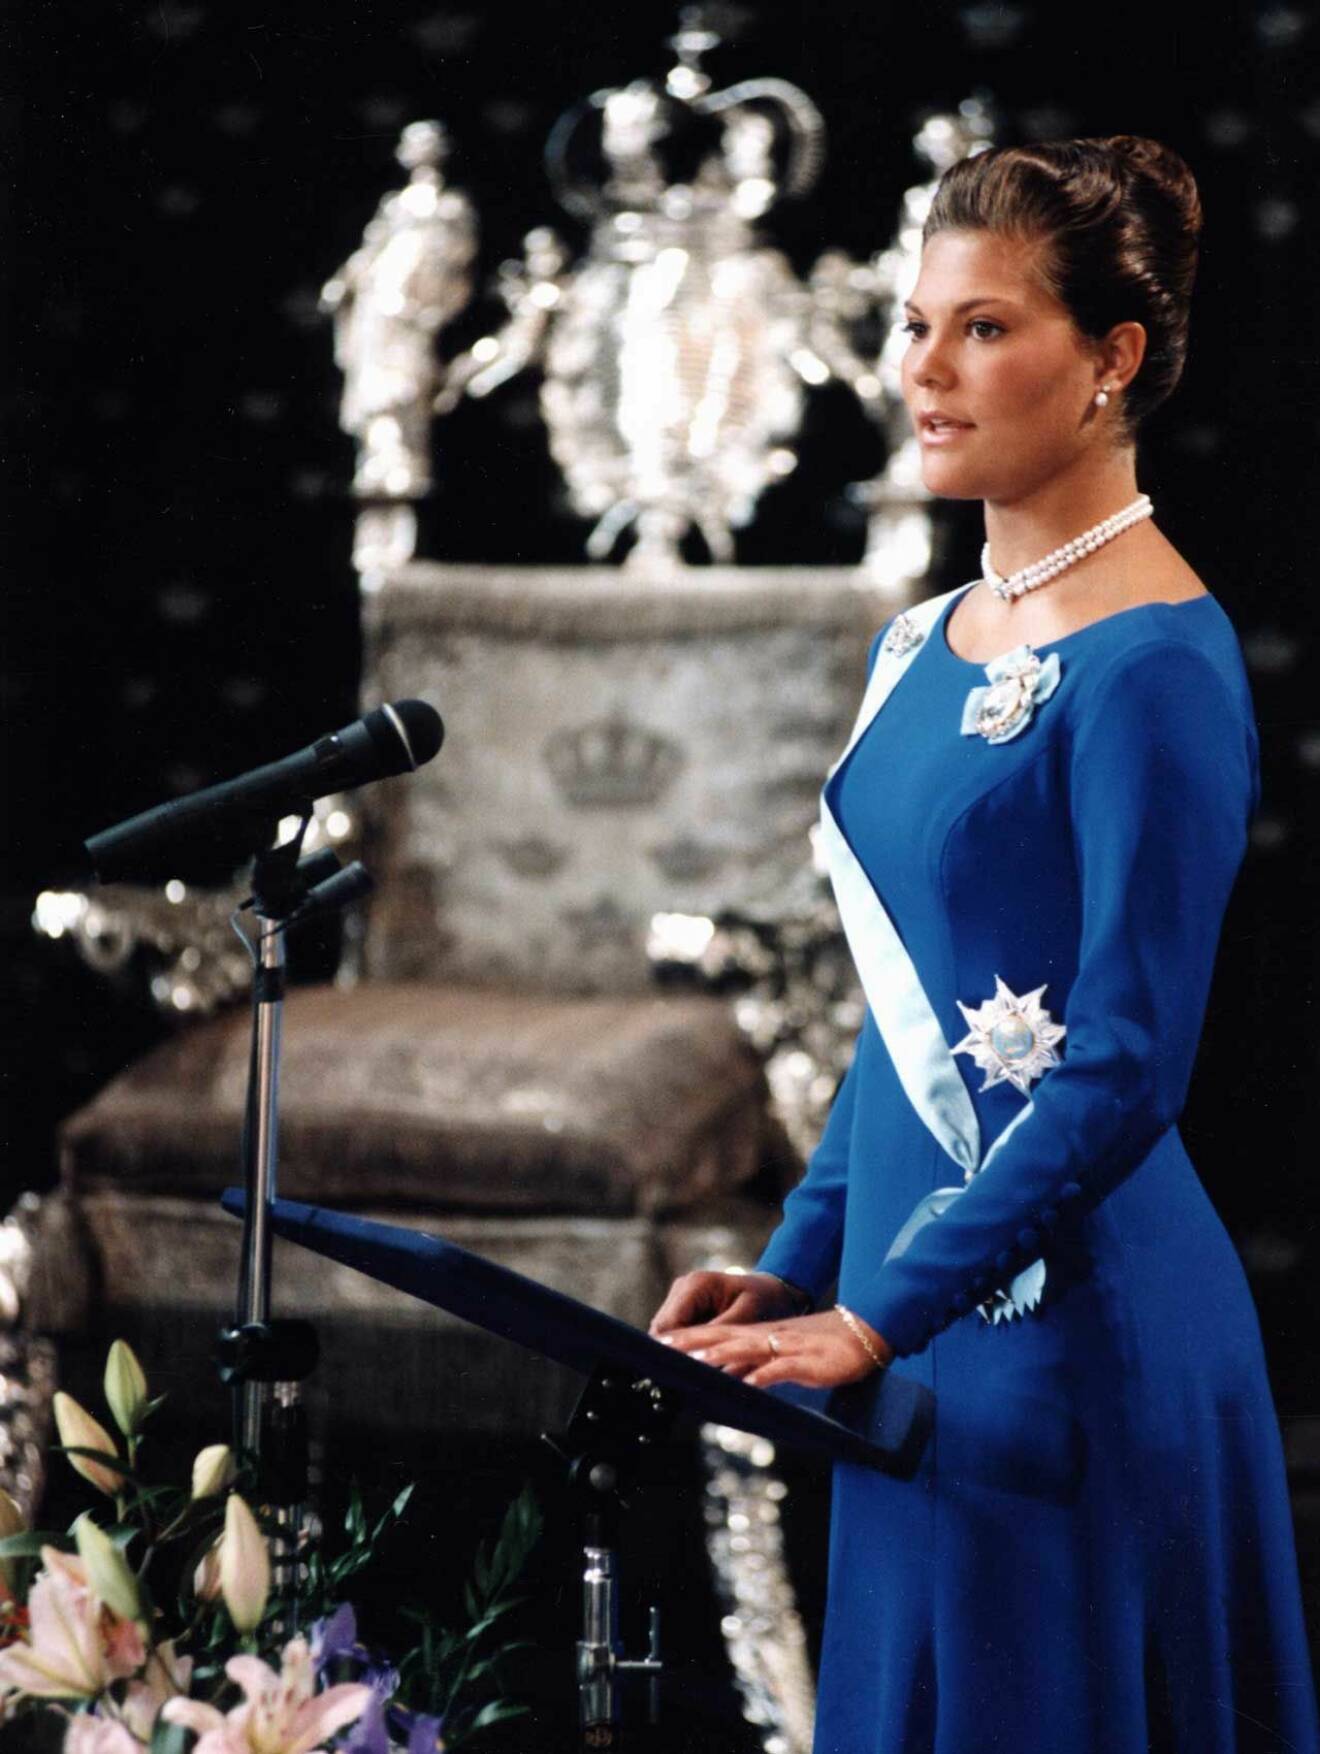 Kronprinsessan Victoria fyller 18 år och håller sitt myndighetstal i Rikssalen.